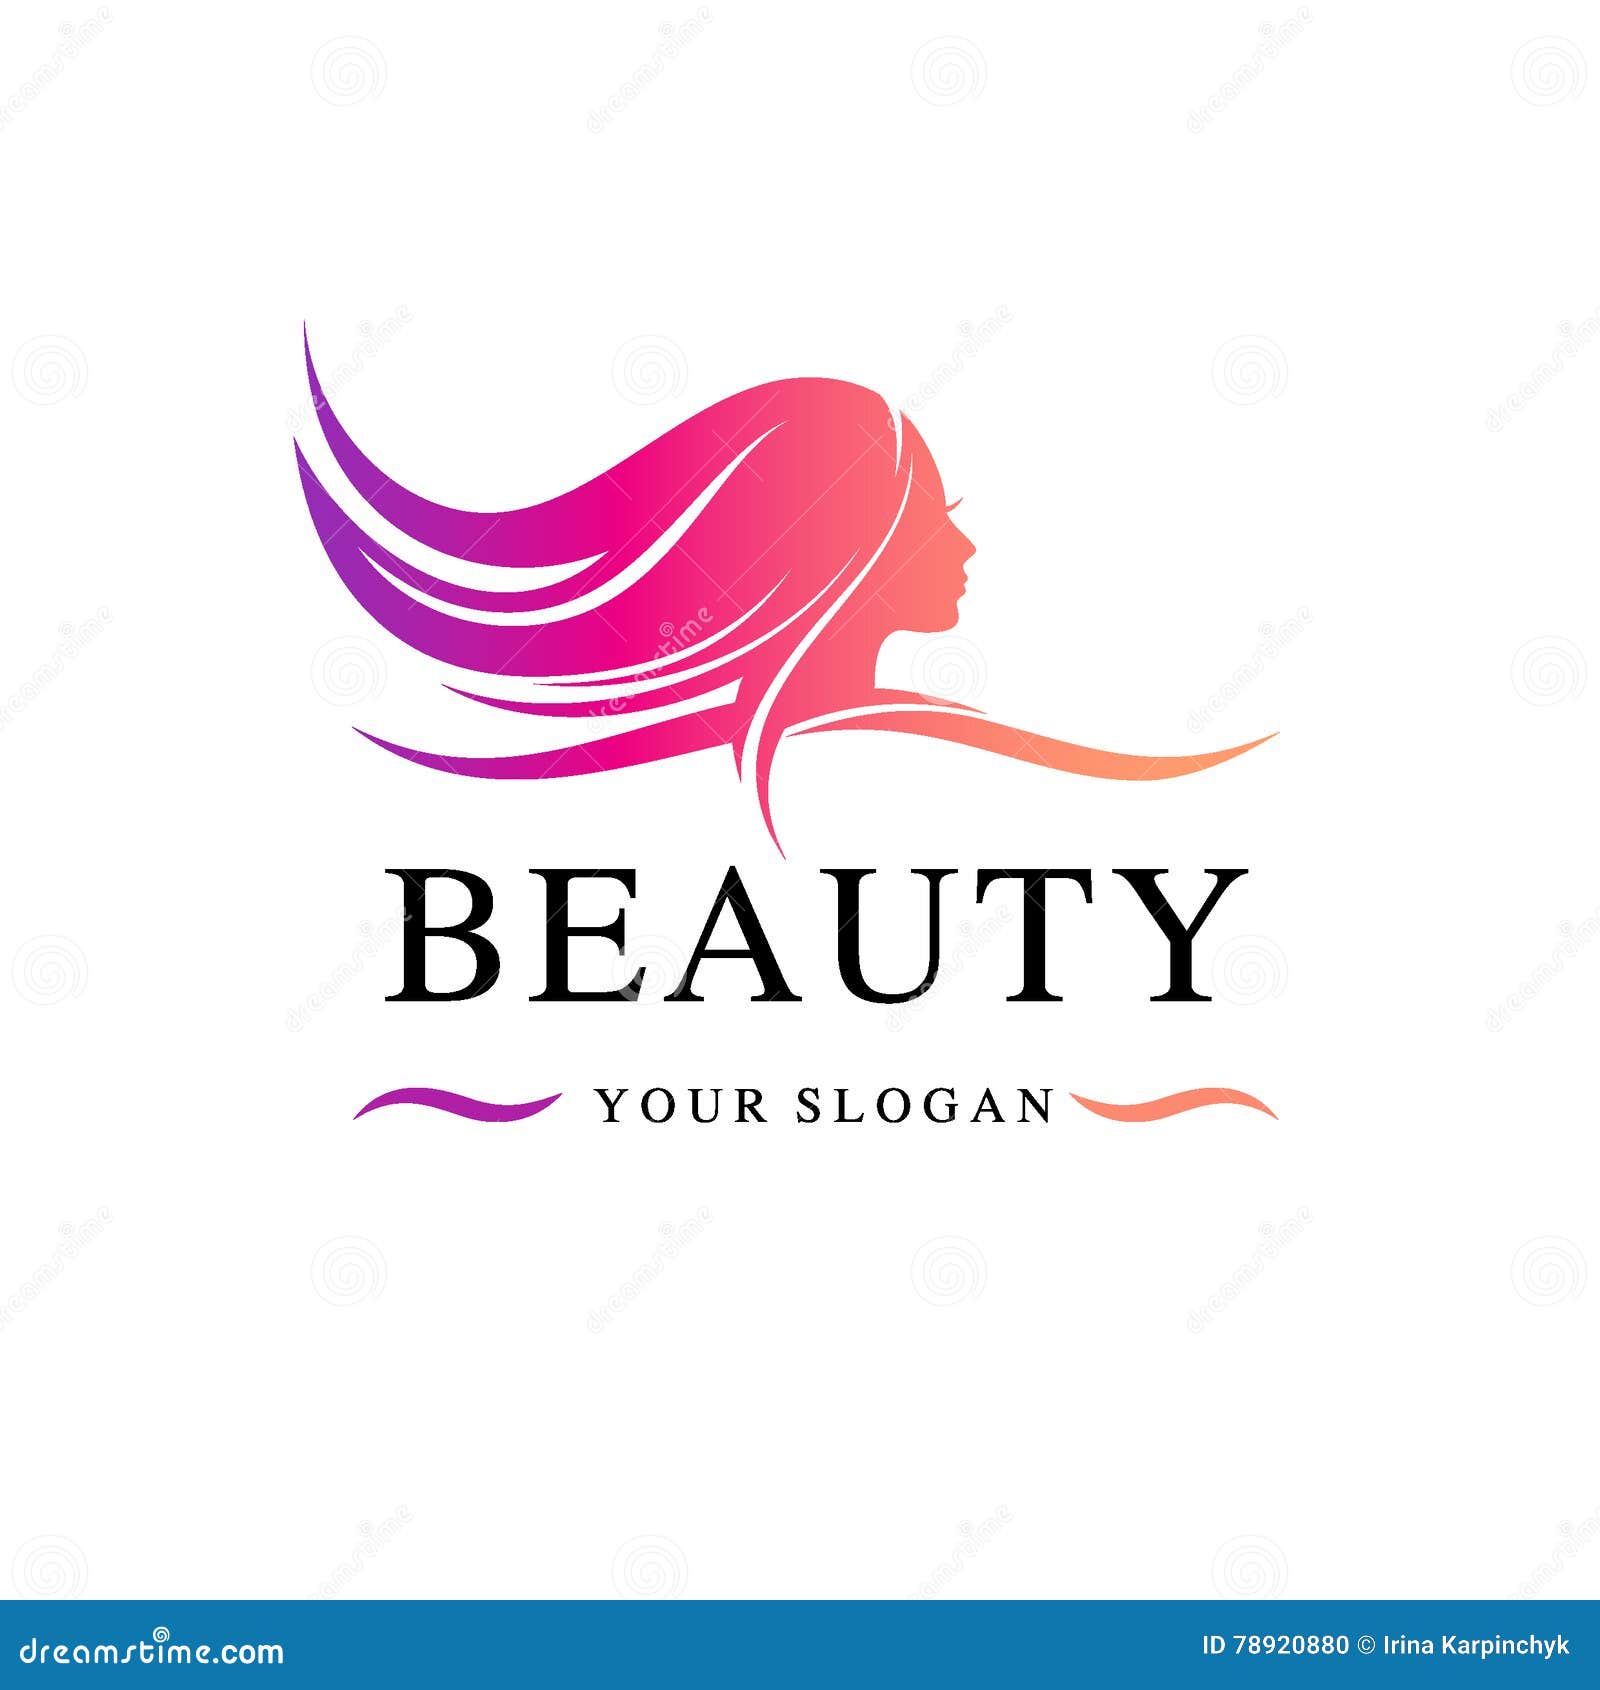 Jawed Habib Hair & Beauty - Benachity, Durgapur | Durgapur